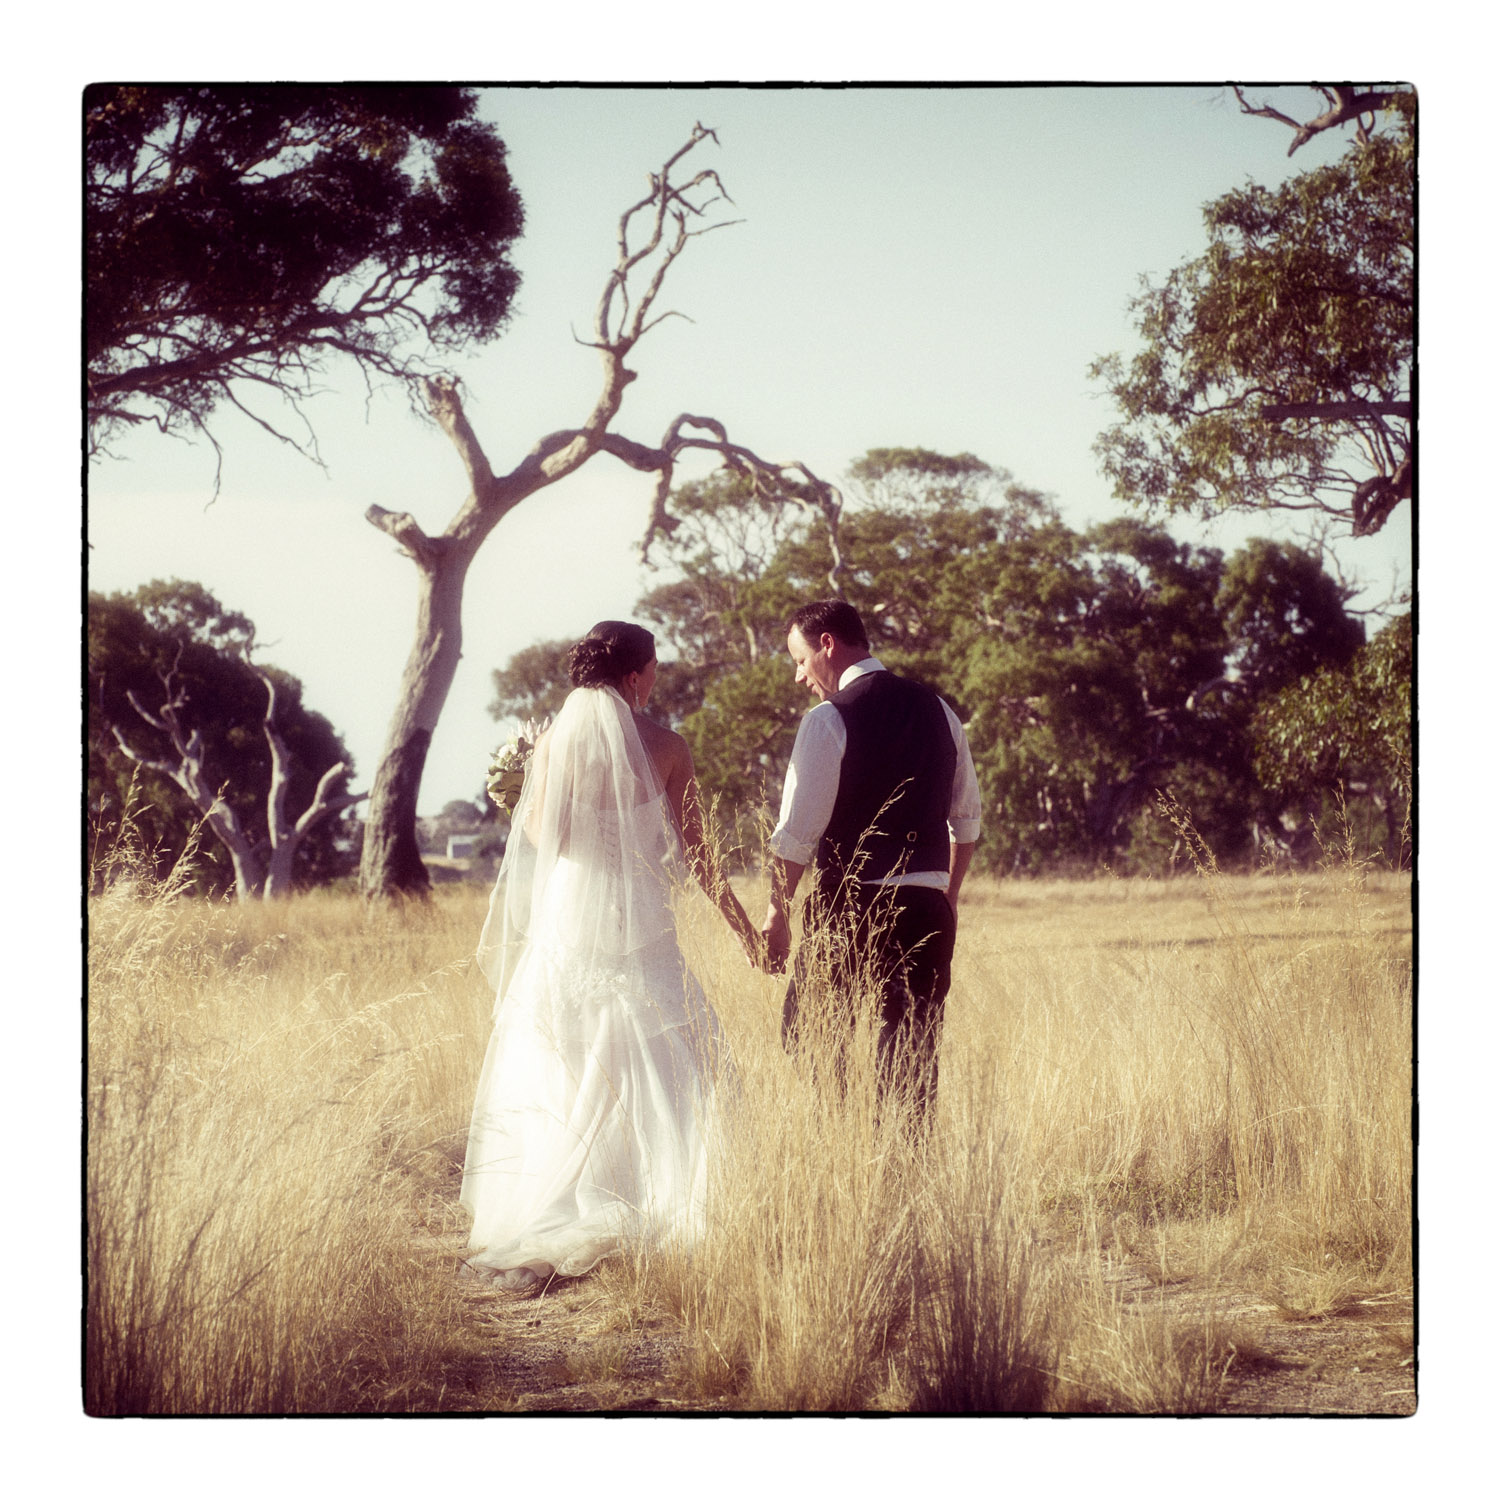  Geelong wedding photographer 